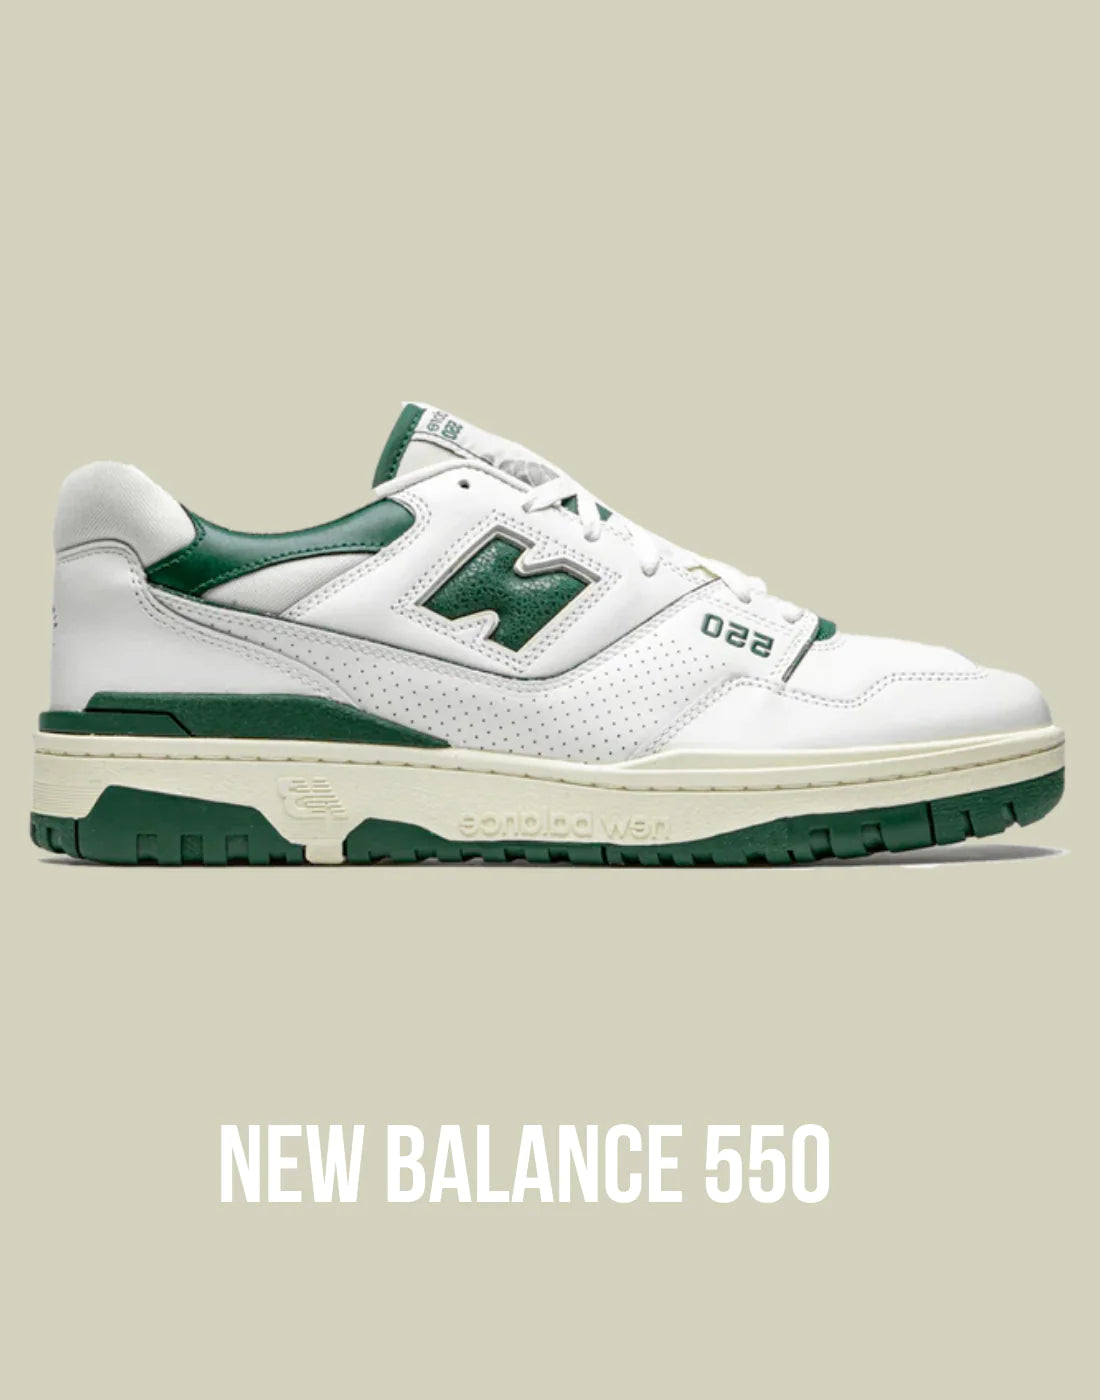 New Balance 550 Kollektion